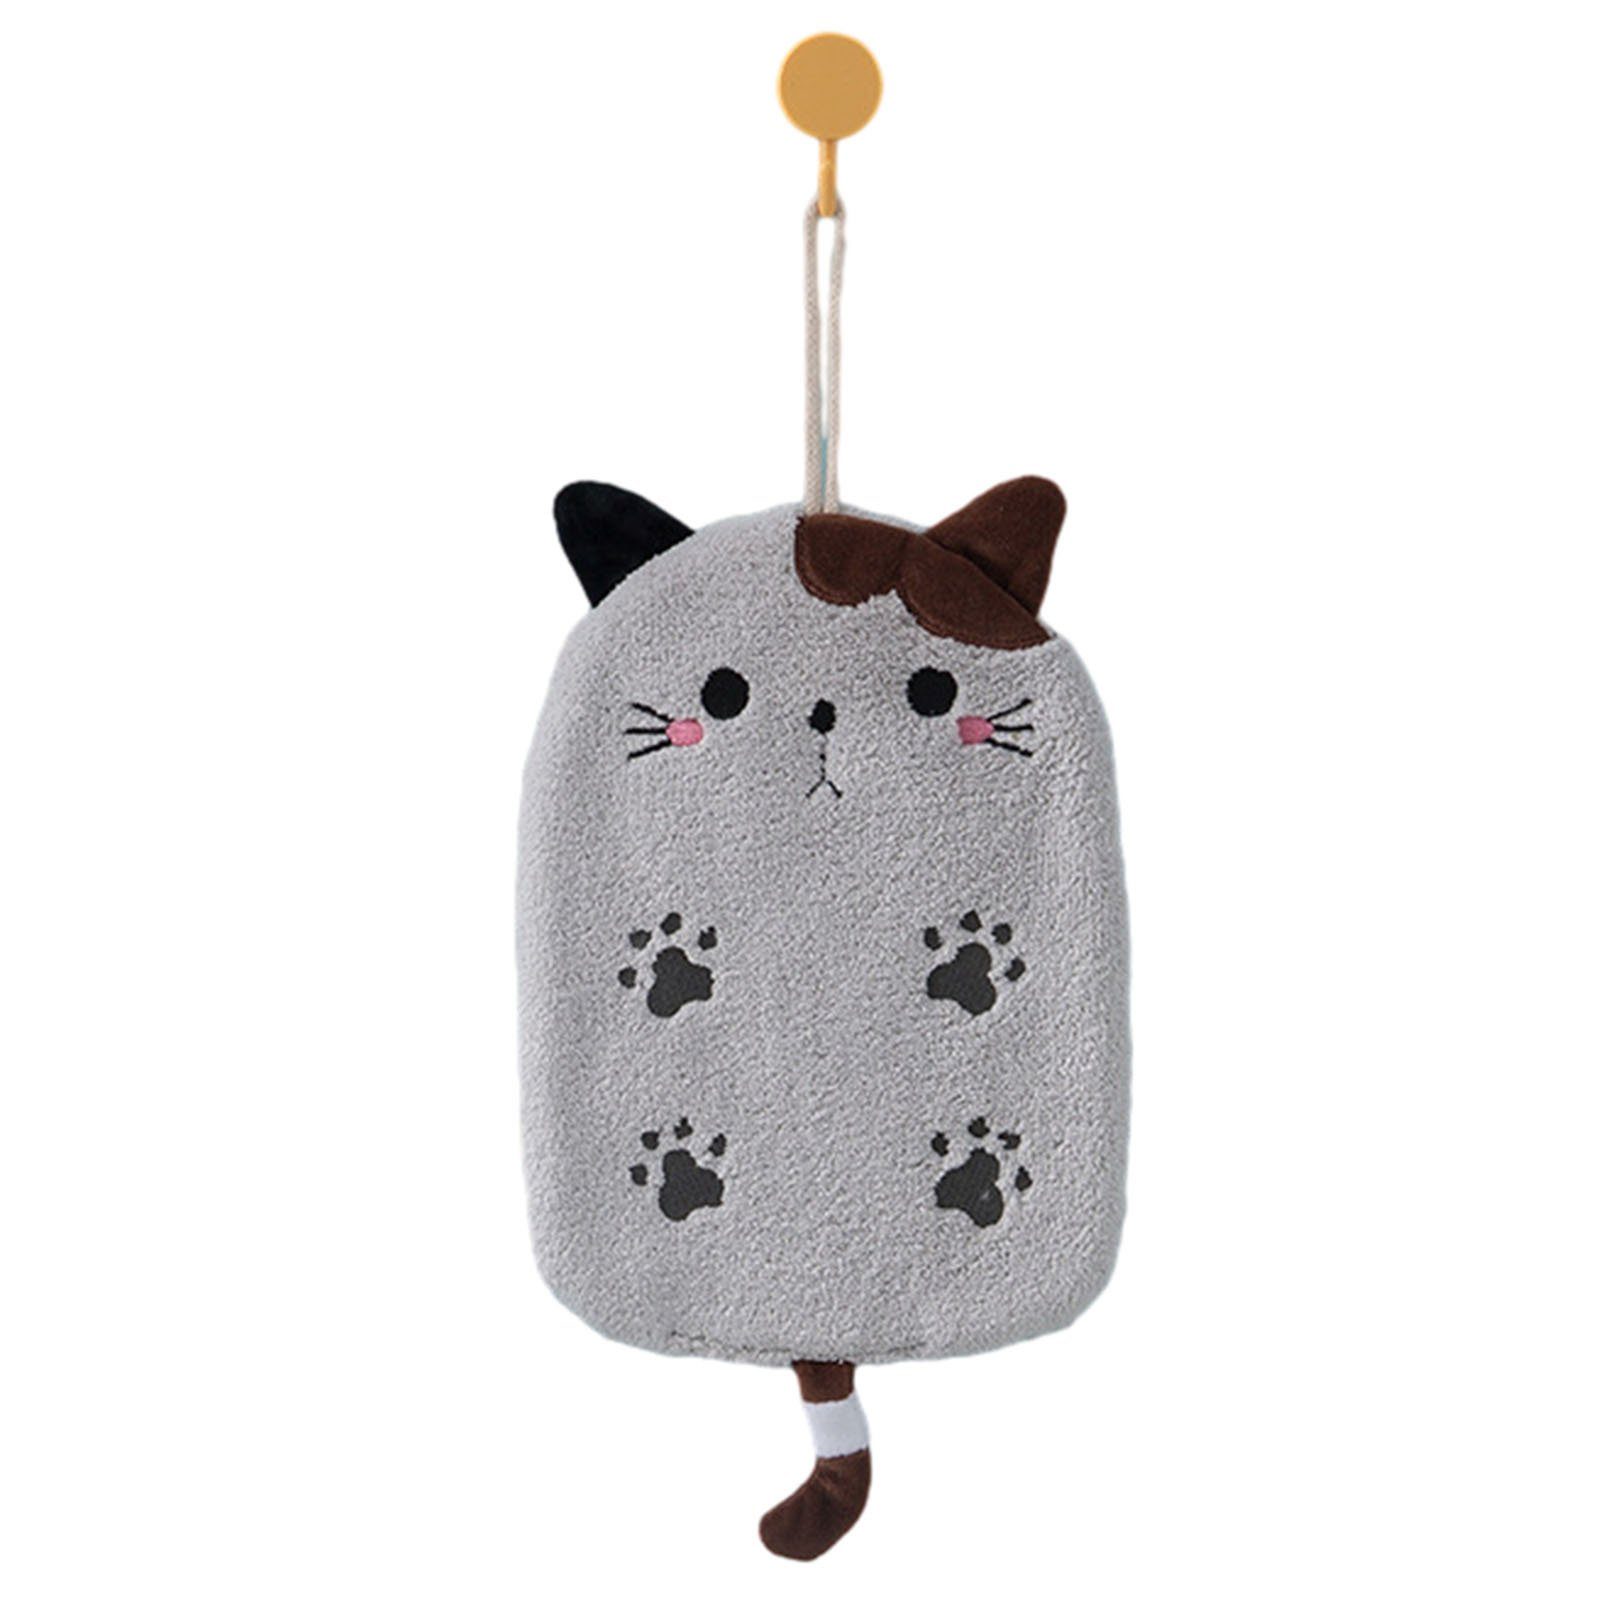 Blusmart Handtuch Set Hübsches Mikrofaser-Handtuch In Katzenform Zum Aufhängen, Lichtecht grey